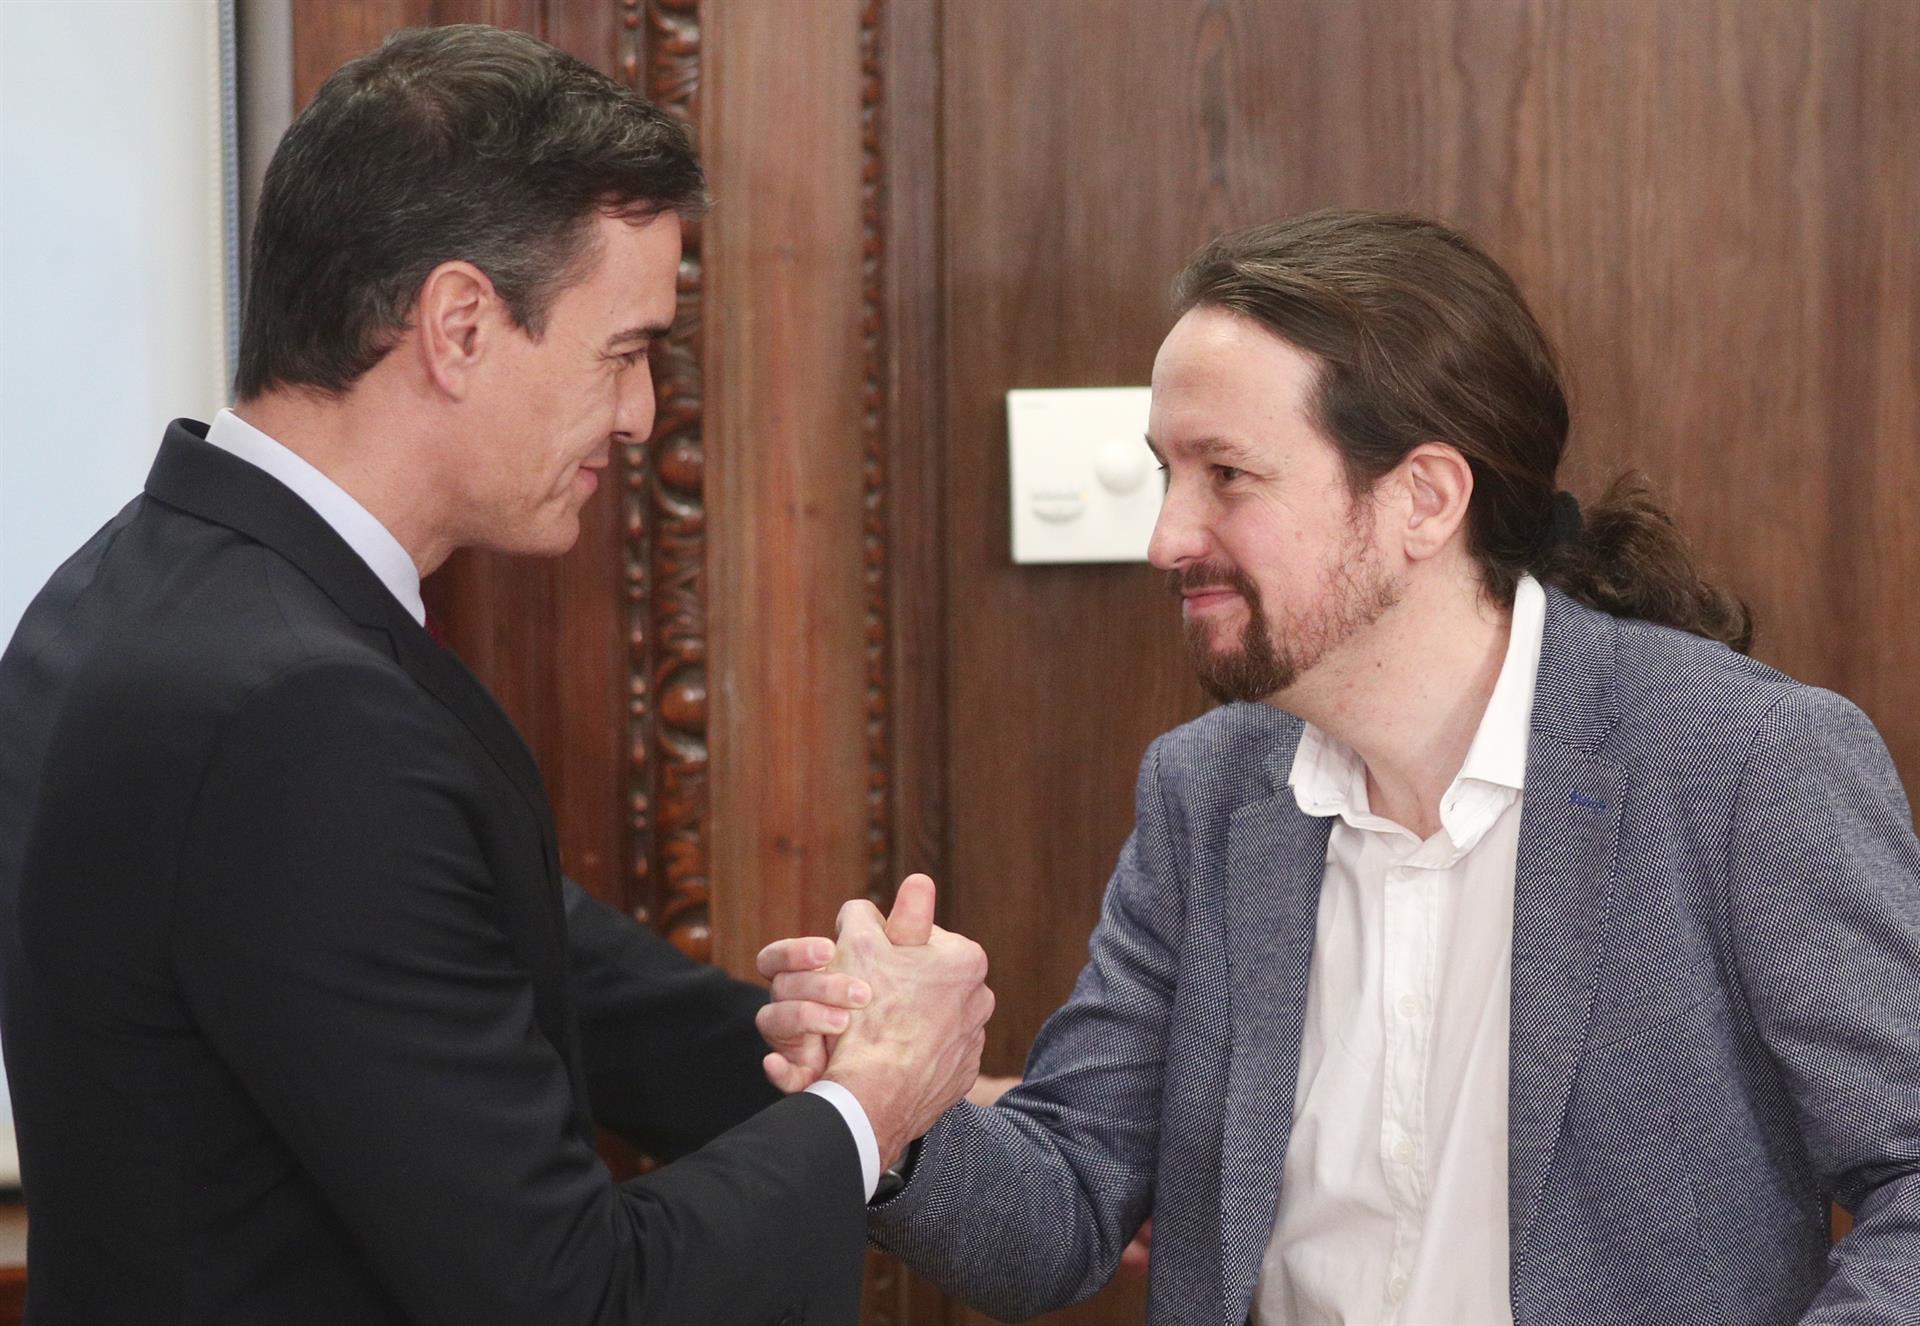 El presidente del Gobierno en funciones, Pedro Sánchez, y el secretario general de Podemos, Pablo Iglesias, se saludan tras presentar su acuerdo de gobierno en el Congreso de los Diputados / Europa Press